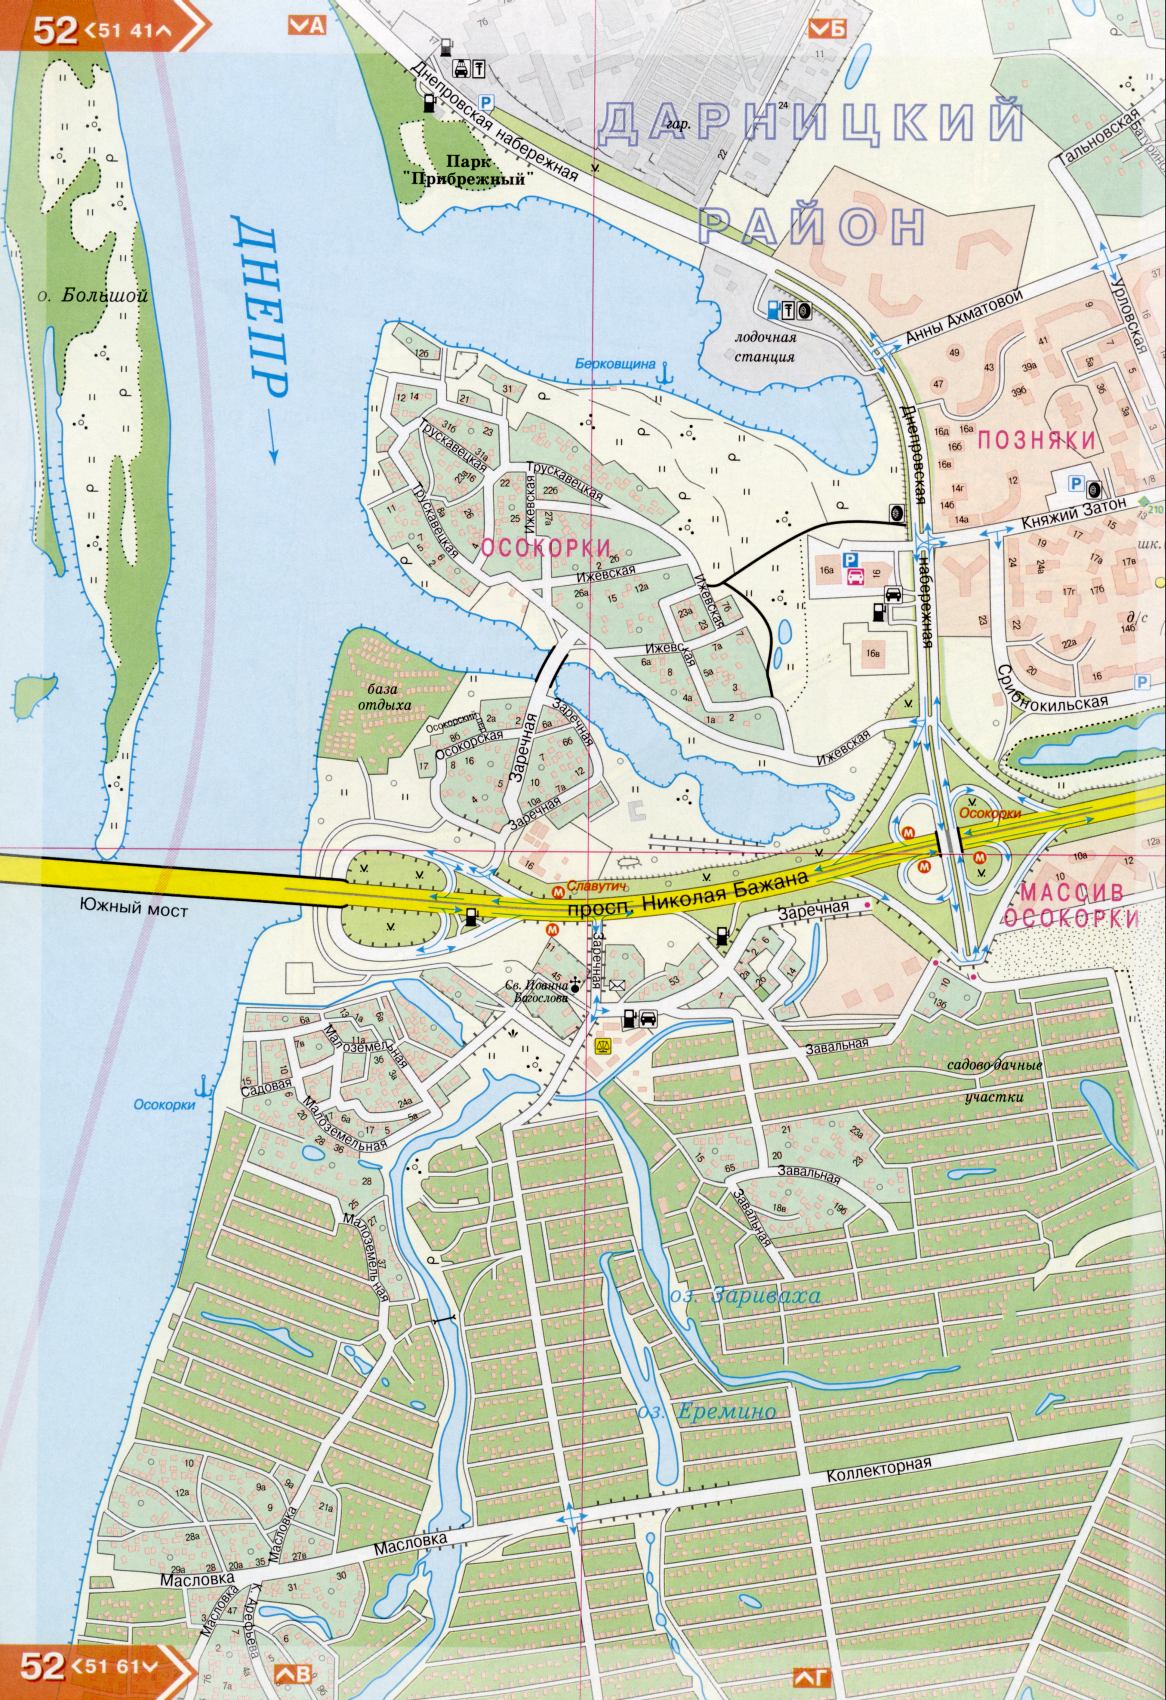 Kiew Karte Details 1cm = 150m für 45 Blatt. Karte von Kiew aus dem Atlas von Autobahnen. Laden Sie eine detaillierte Karte, H4